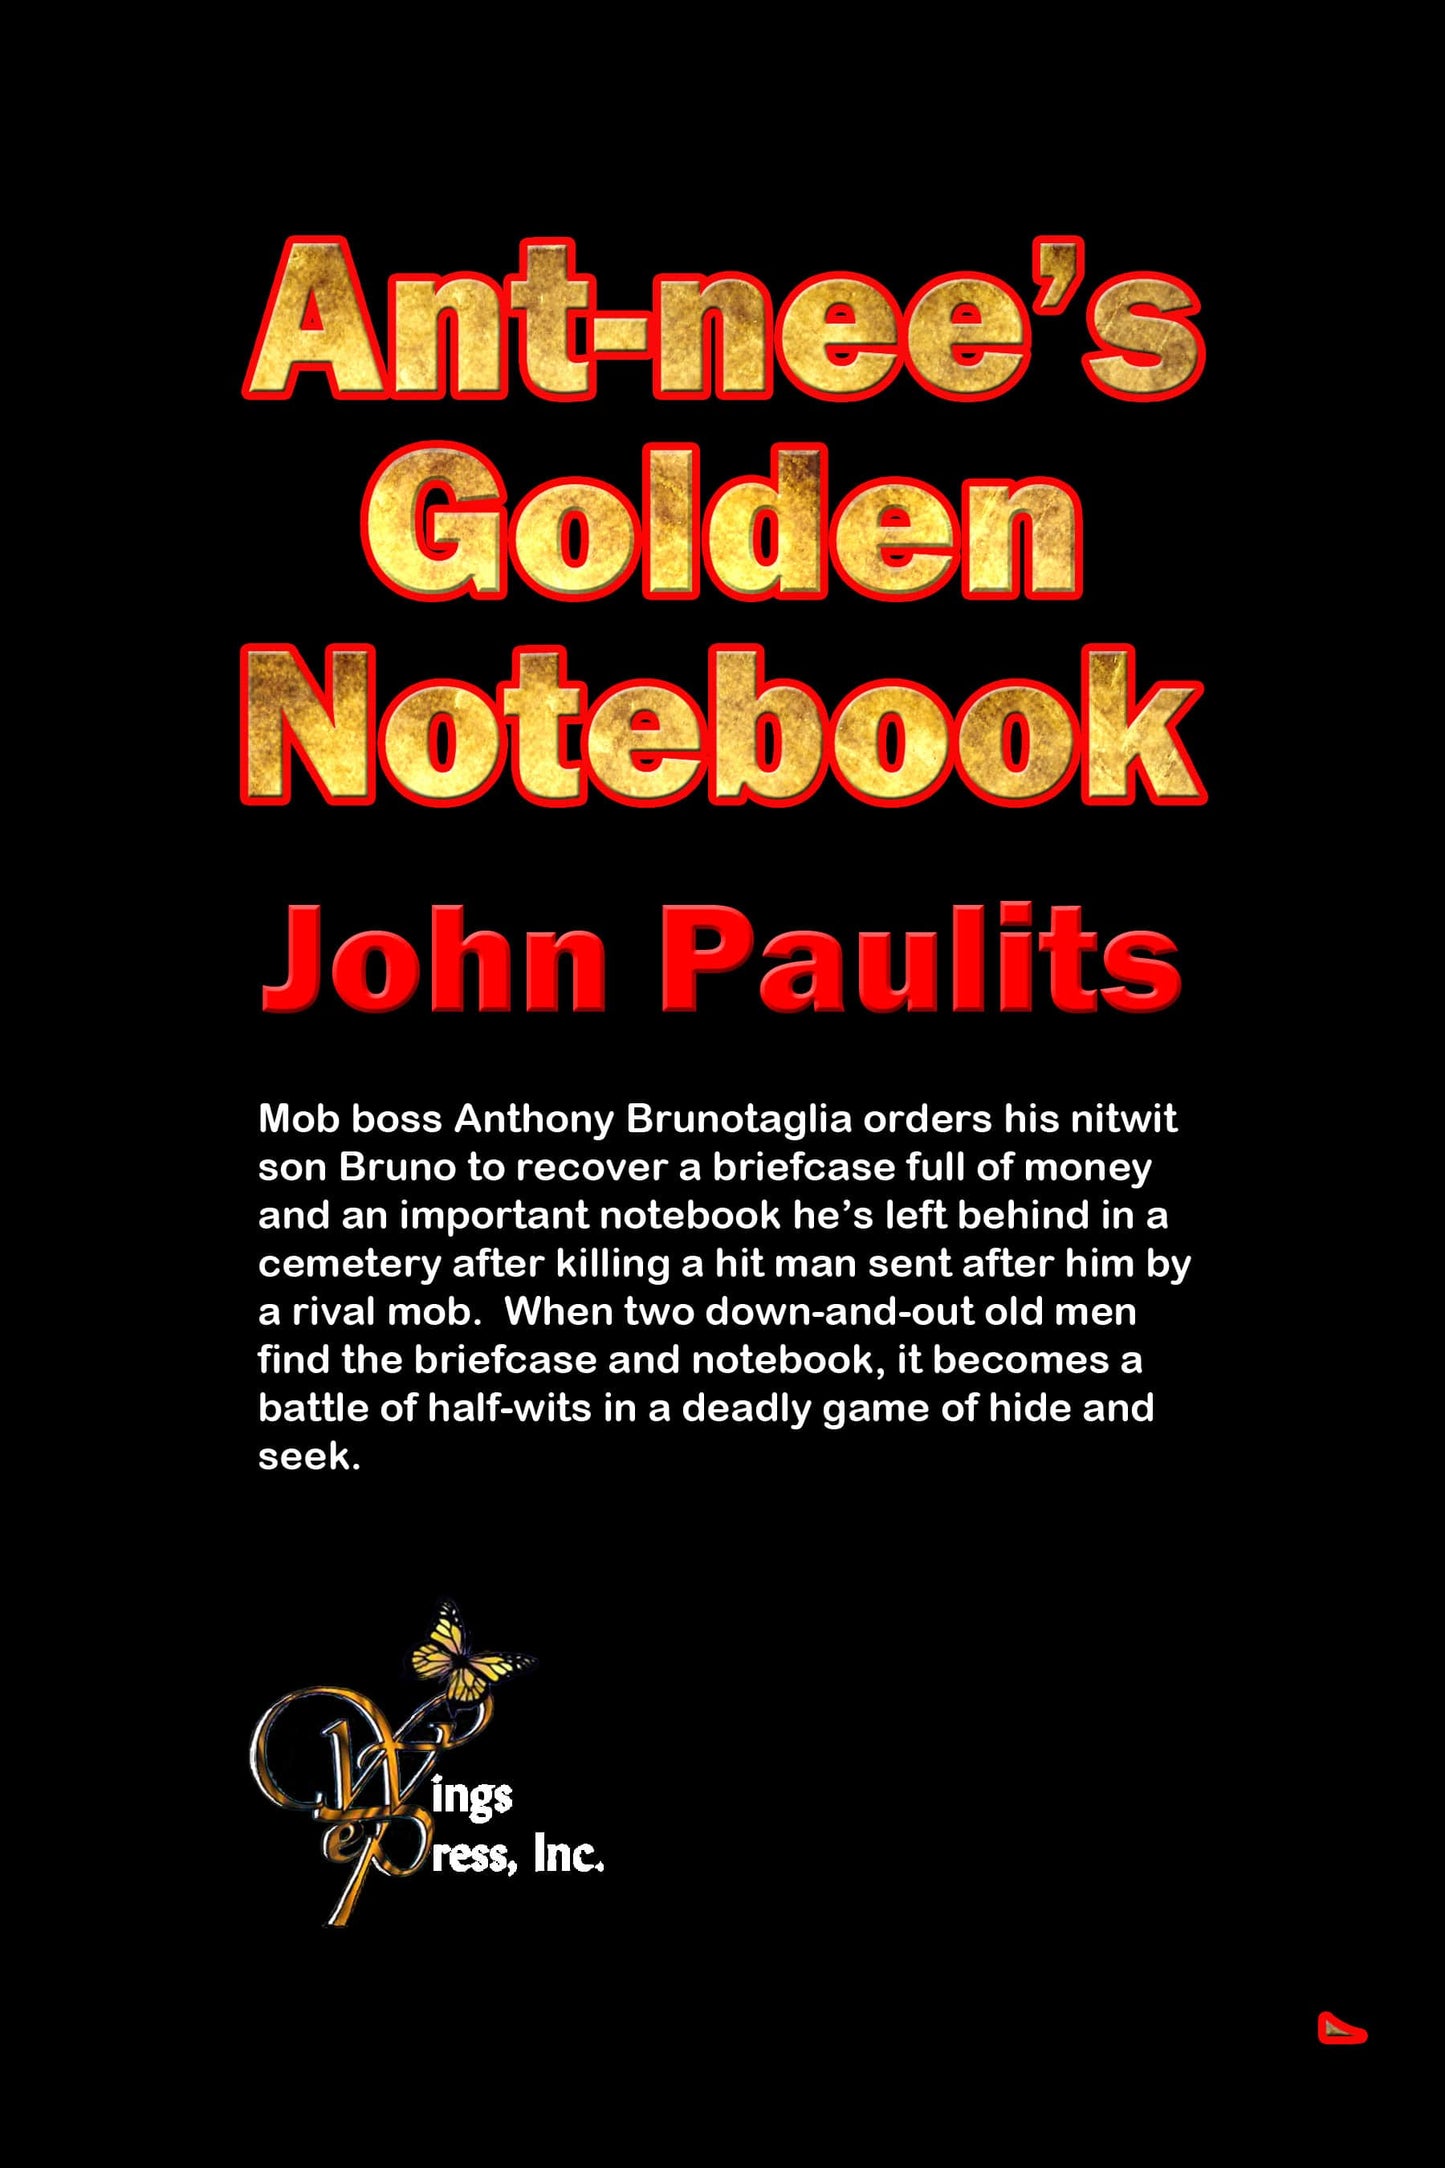 Ant-nee’s Golden Notebook